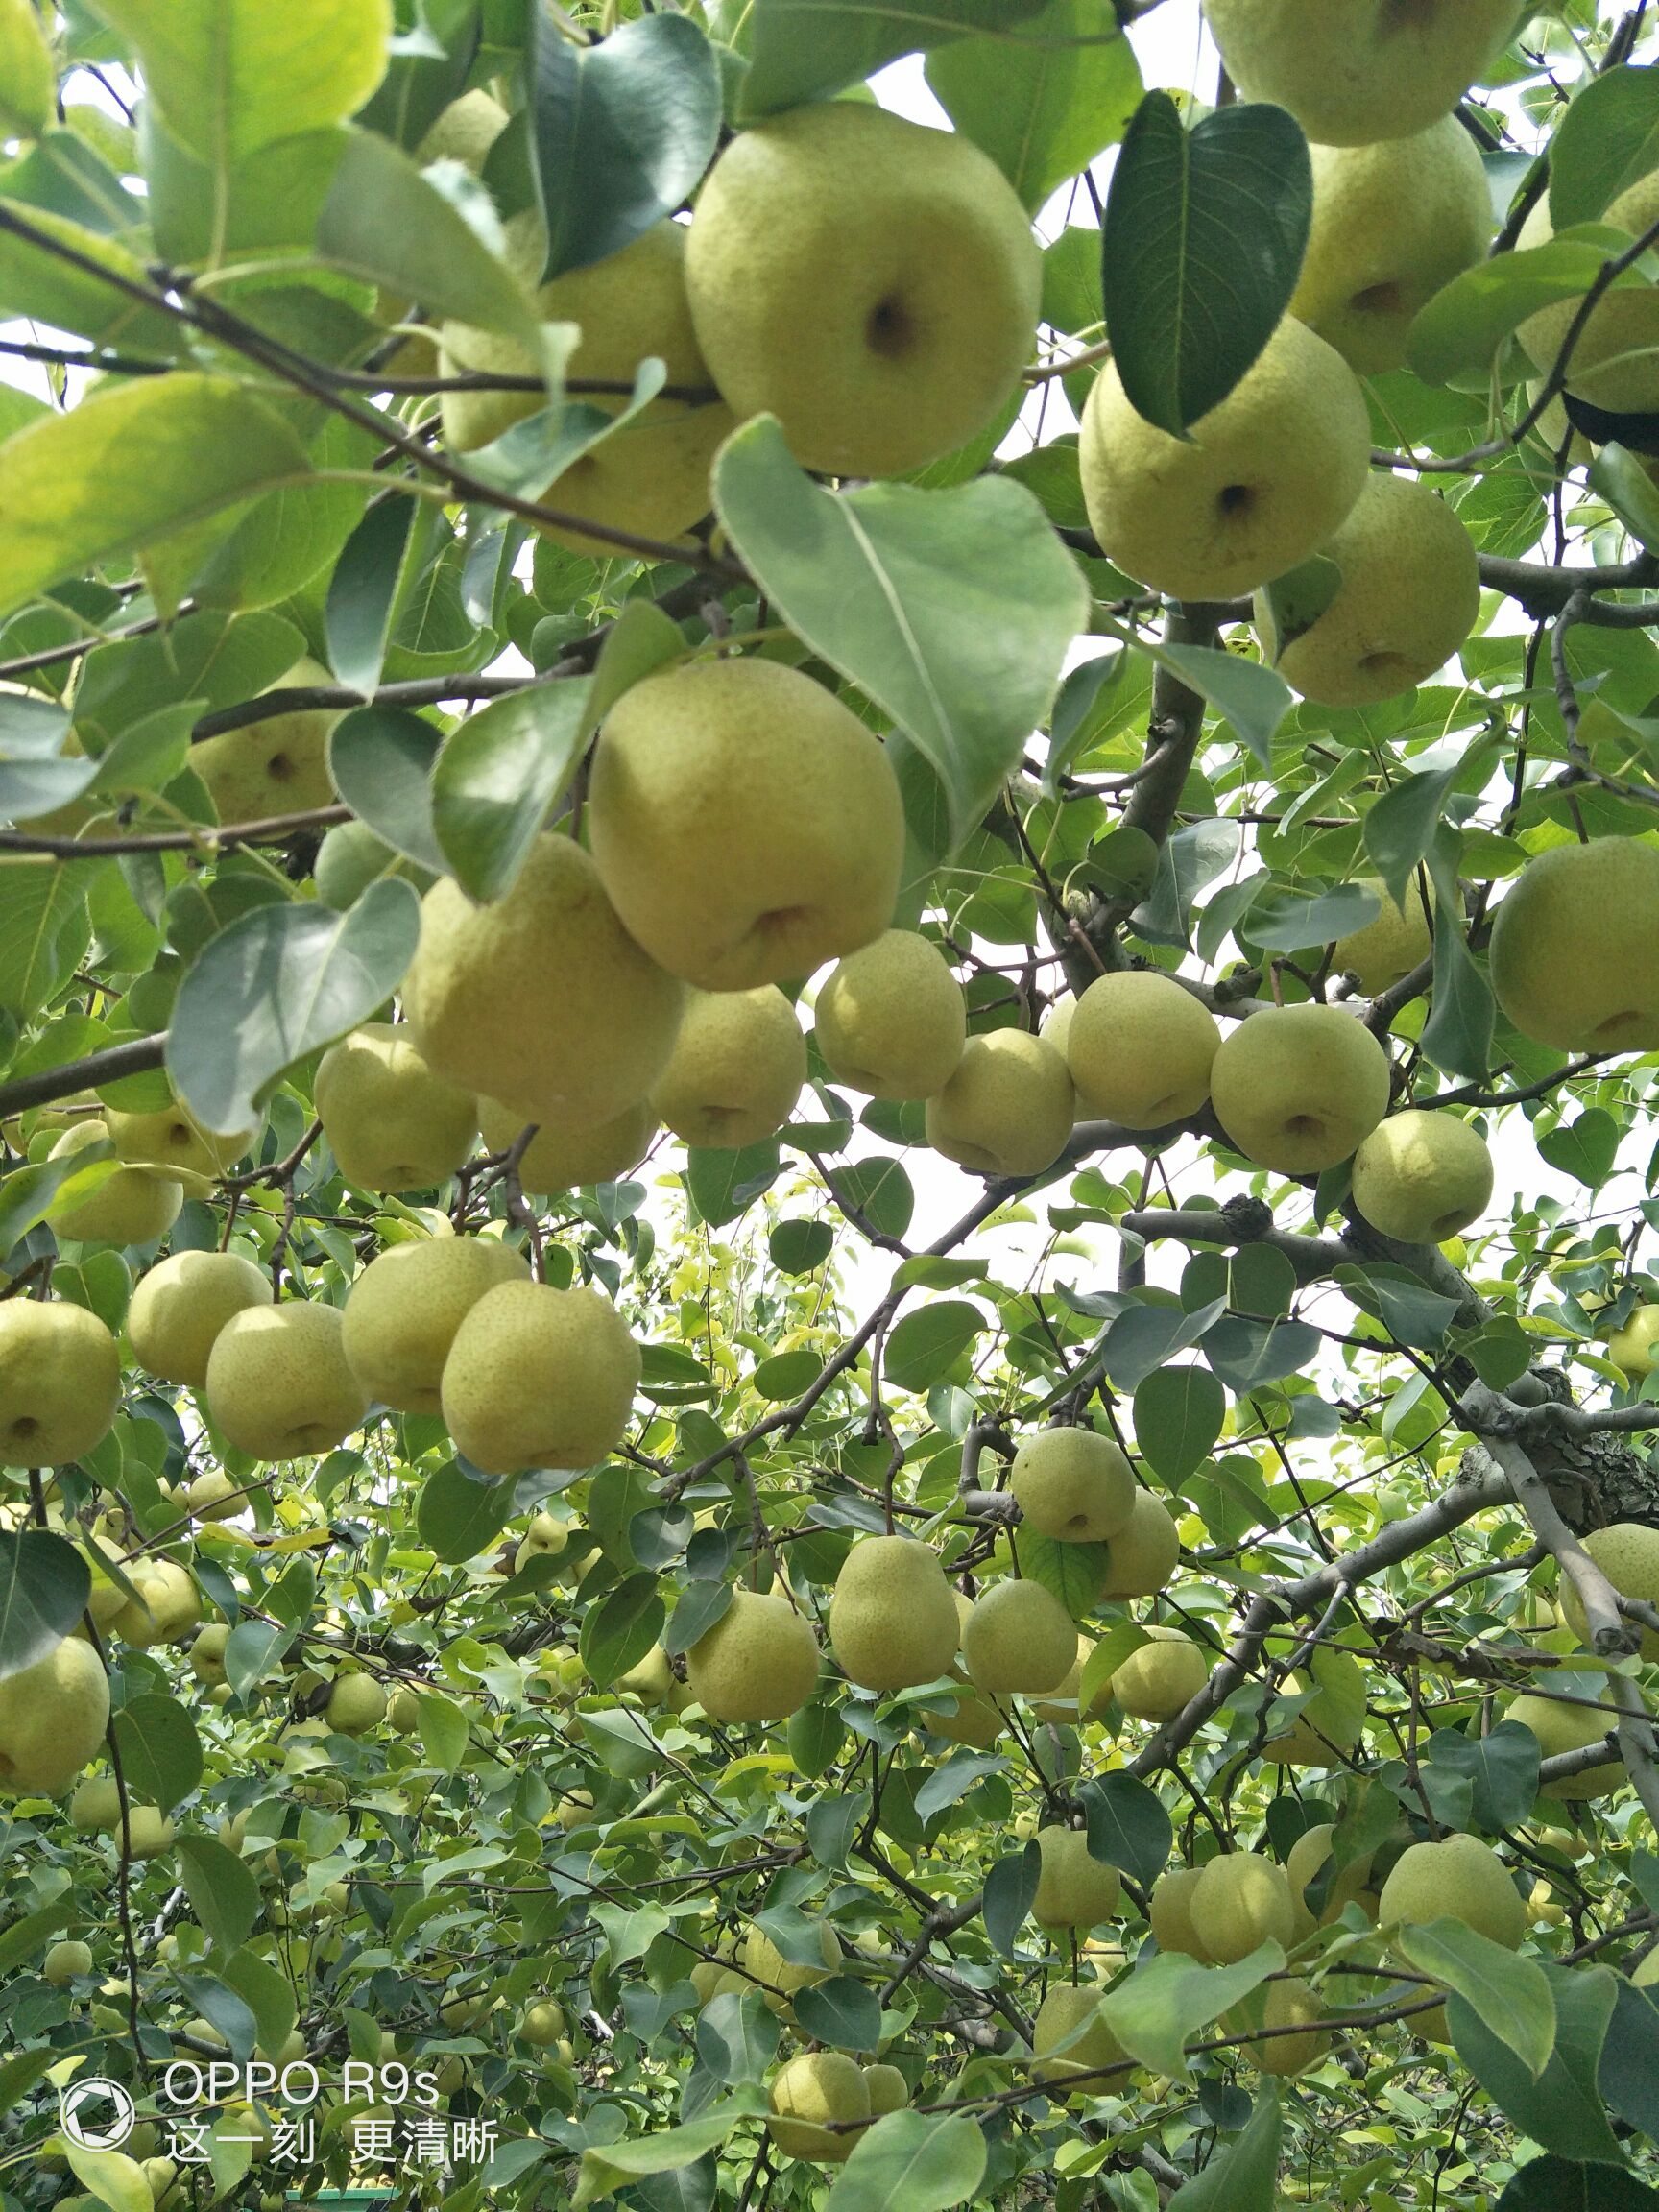 安徽宿州砀山县 砀山酥梨成熟了,已经到了完全成熟期!可甜了